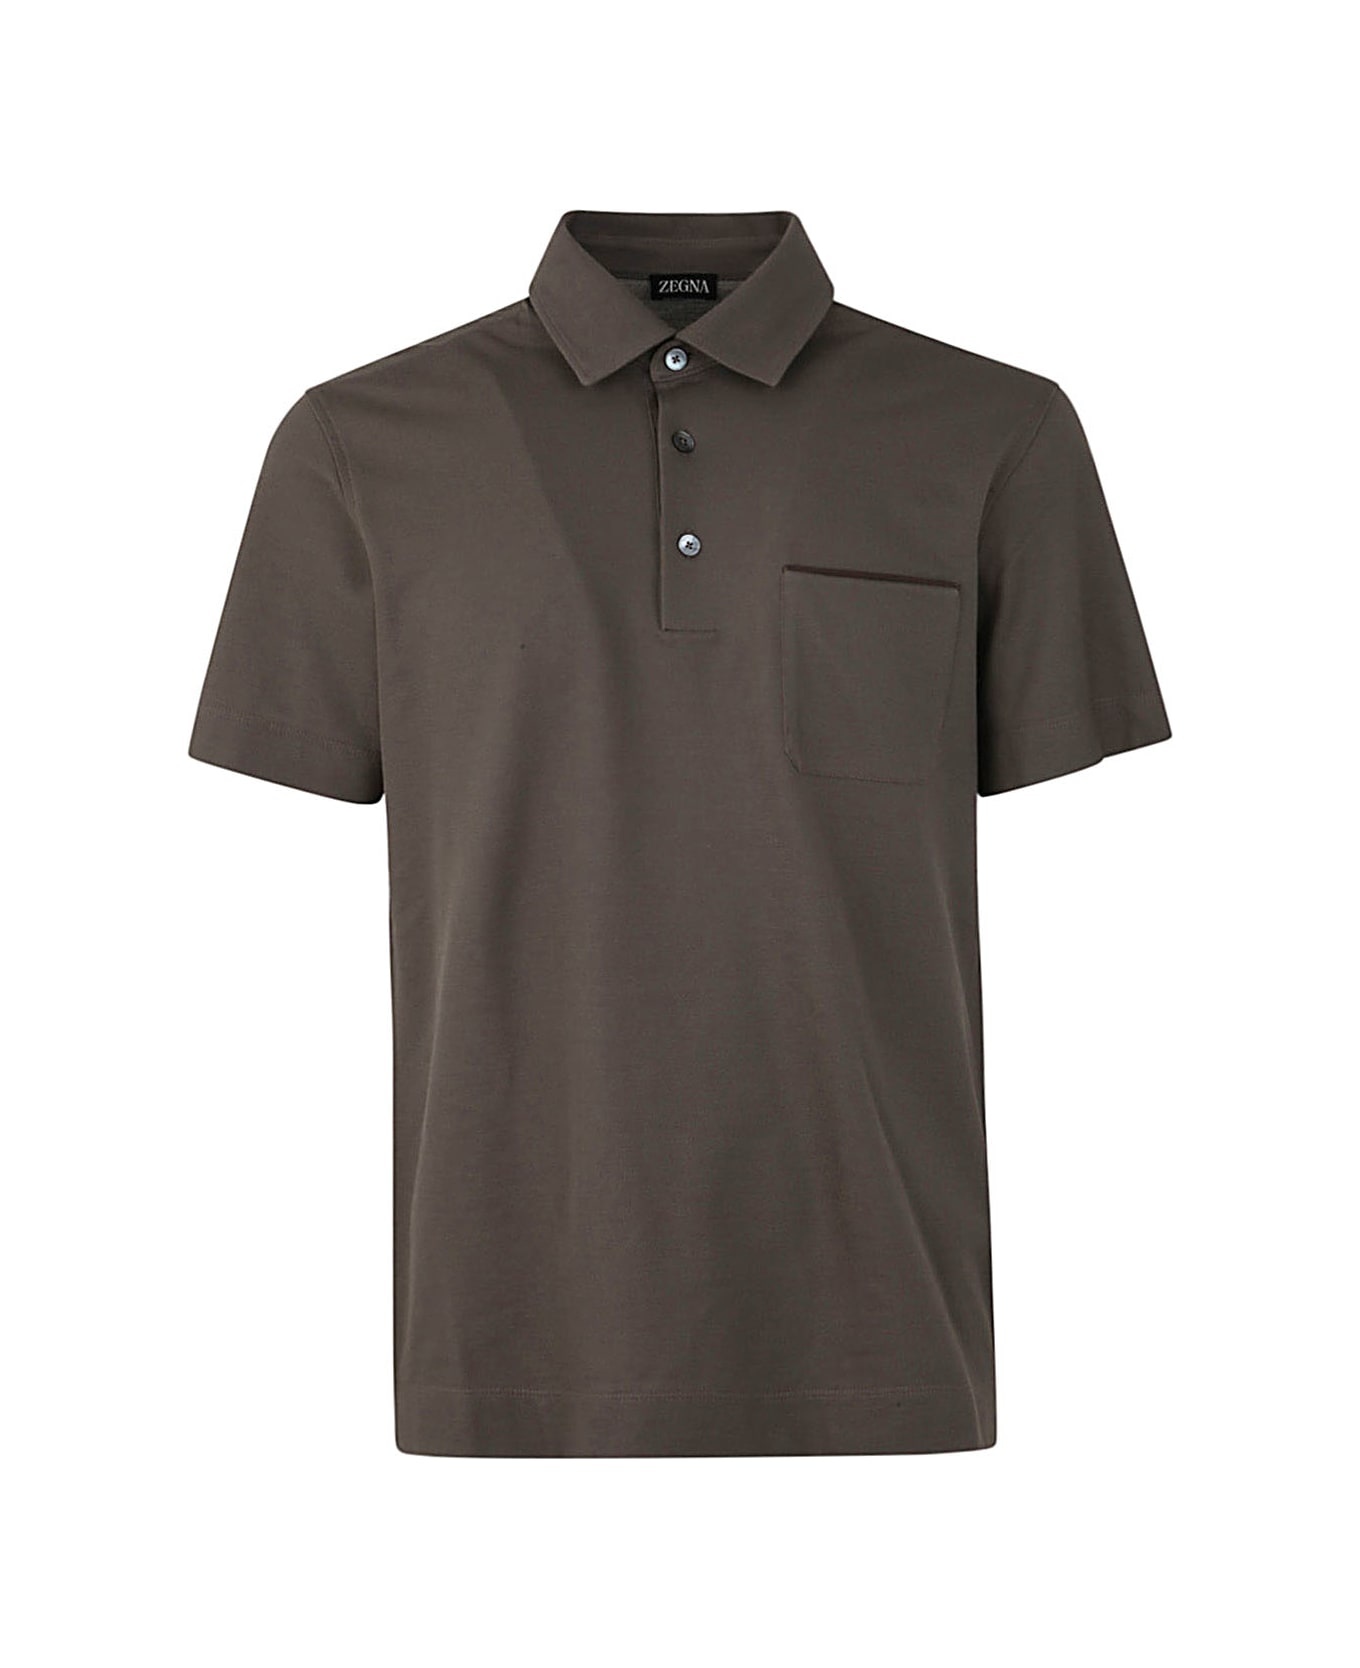 Zegna Pure Cotton Polo - Brown ポロシャツ